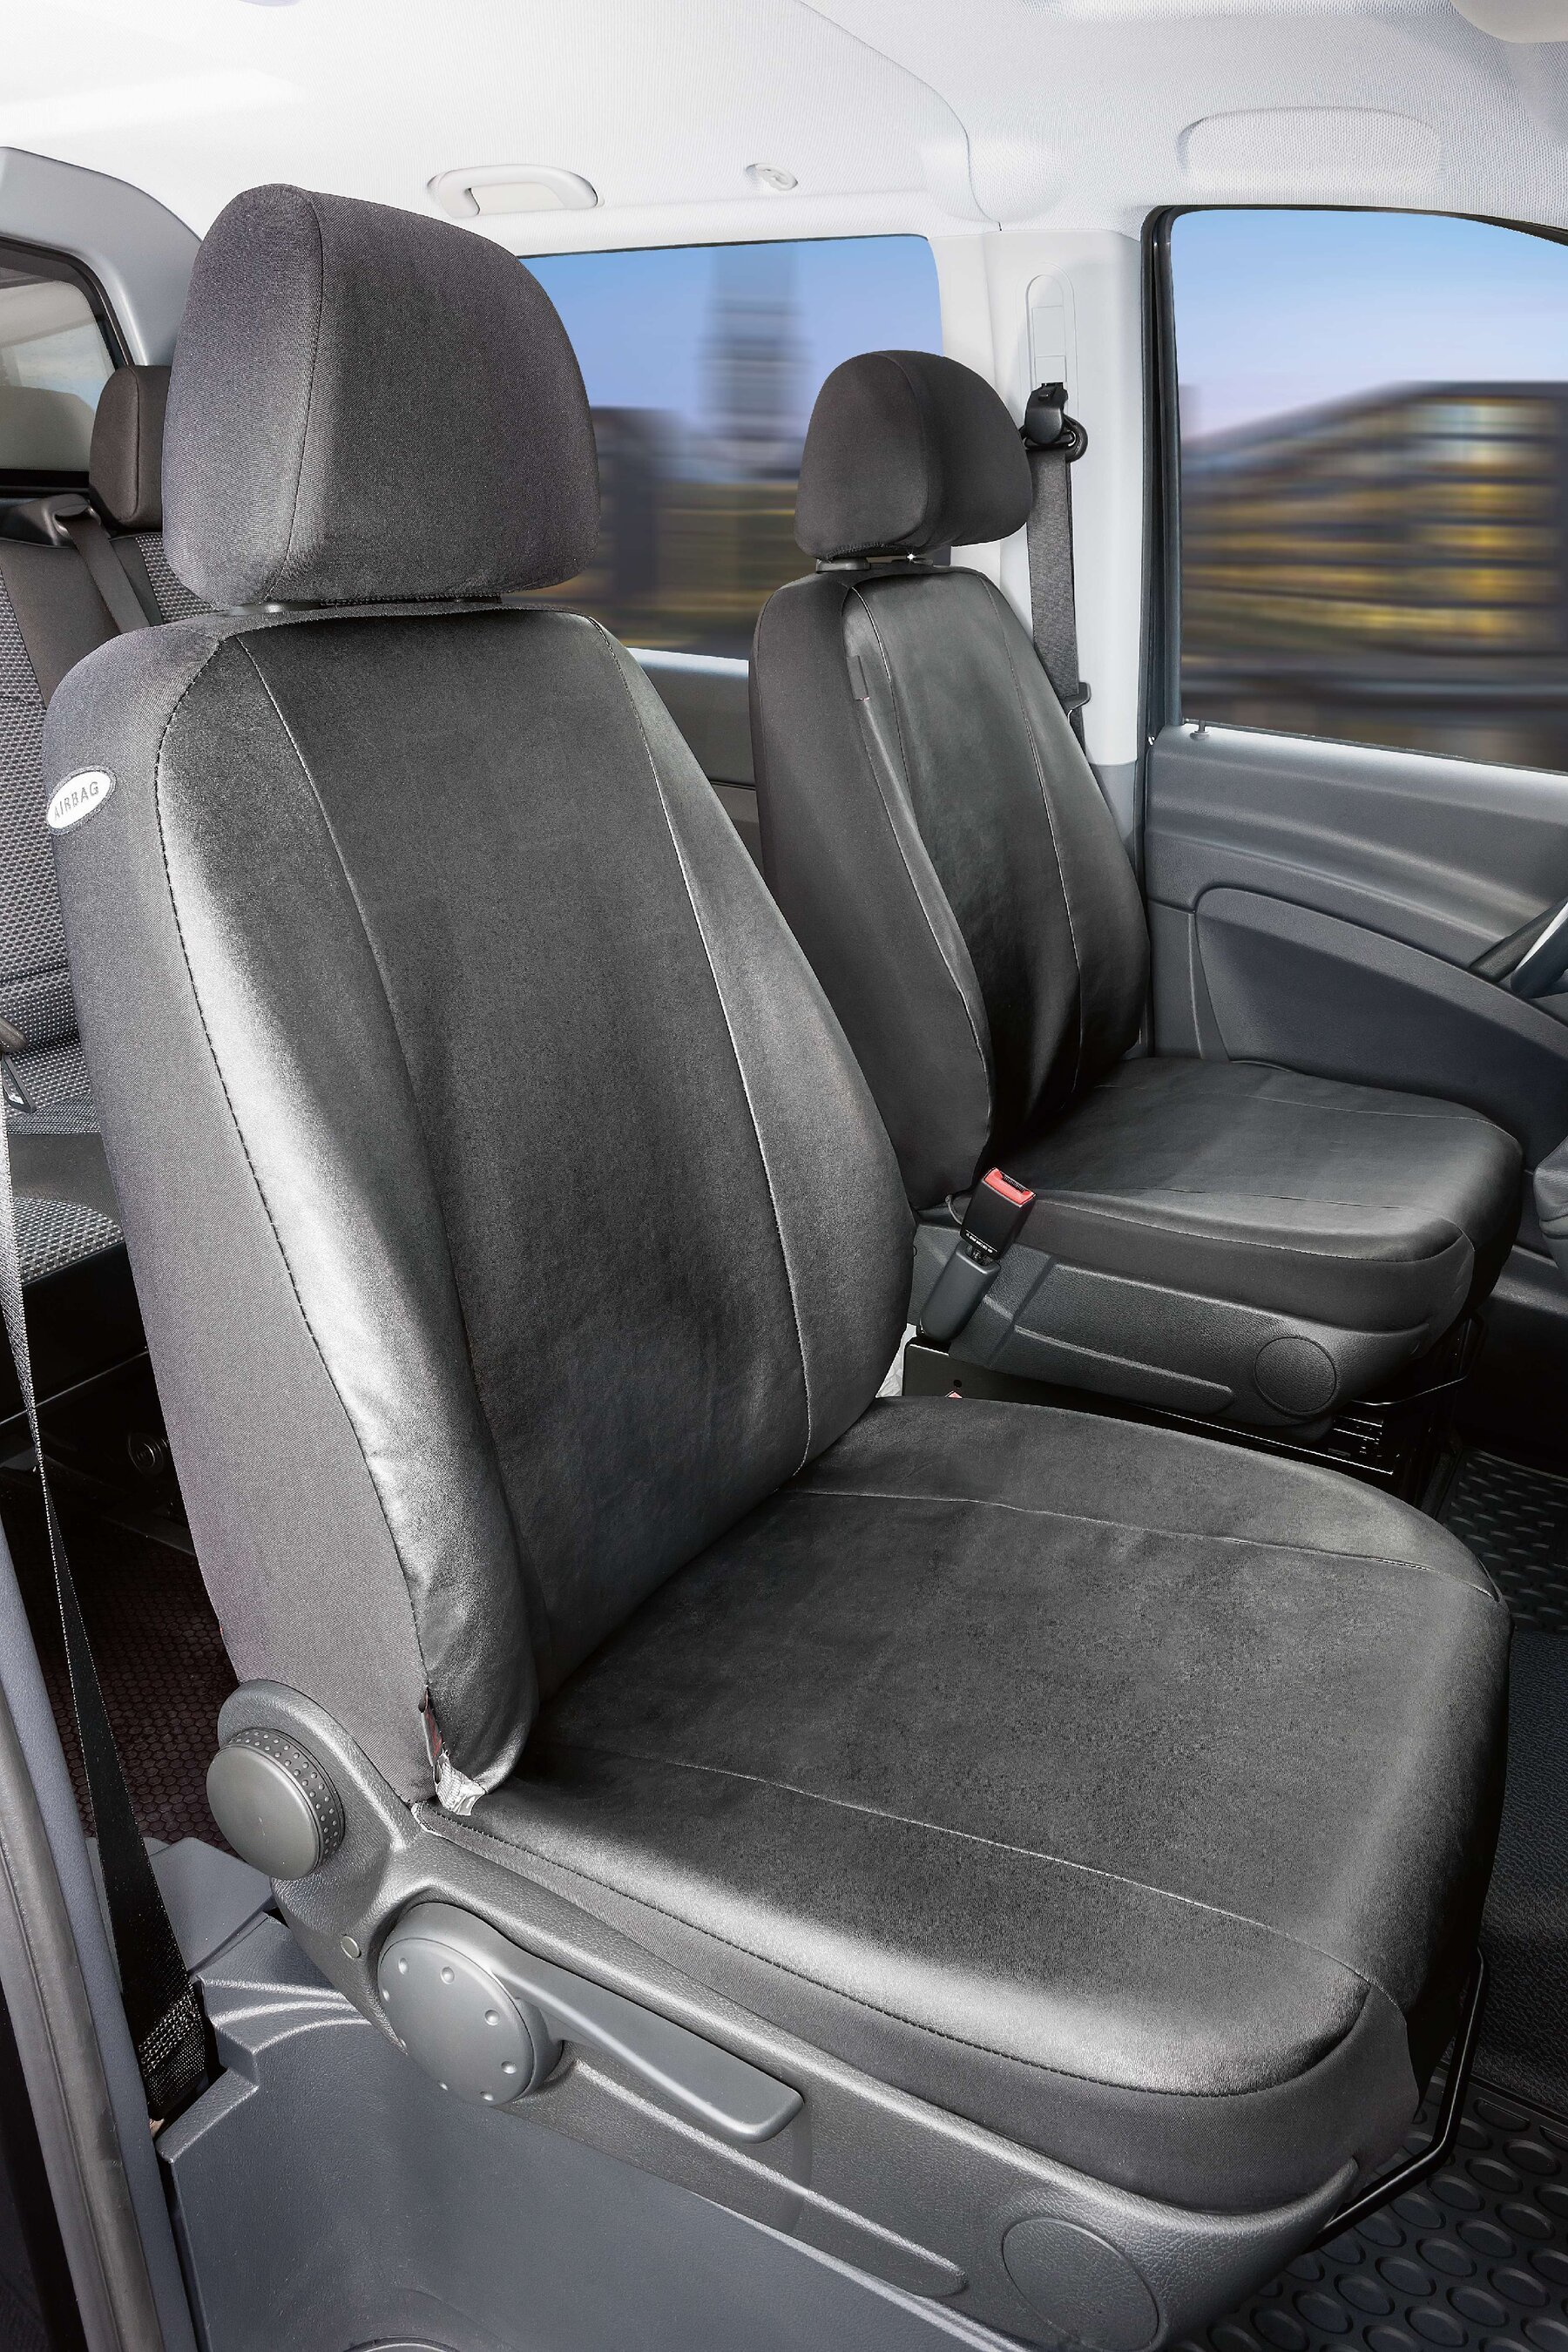 Housse de siège Transporter en simili cuir pour Mercedes-Benz Viano/Vito, 2 sièges simples sans accoudoir